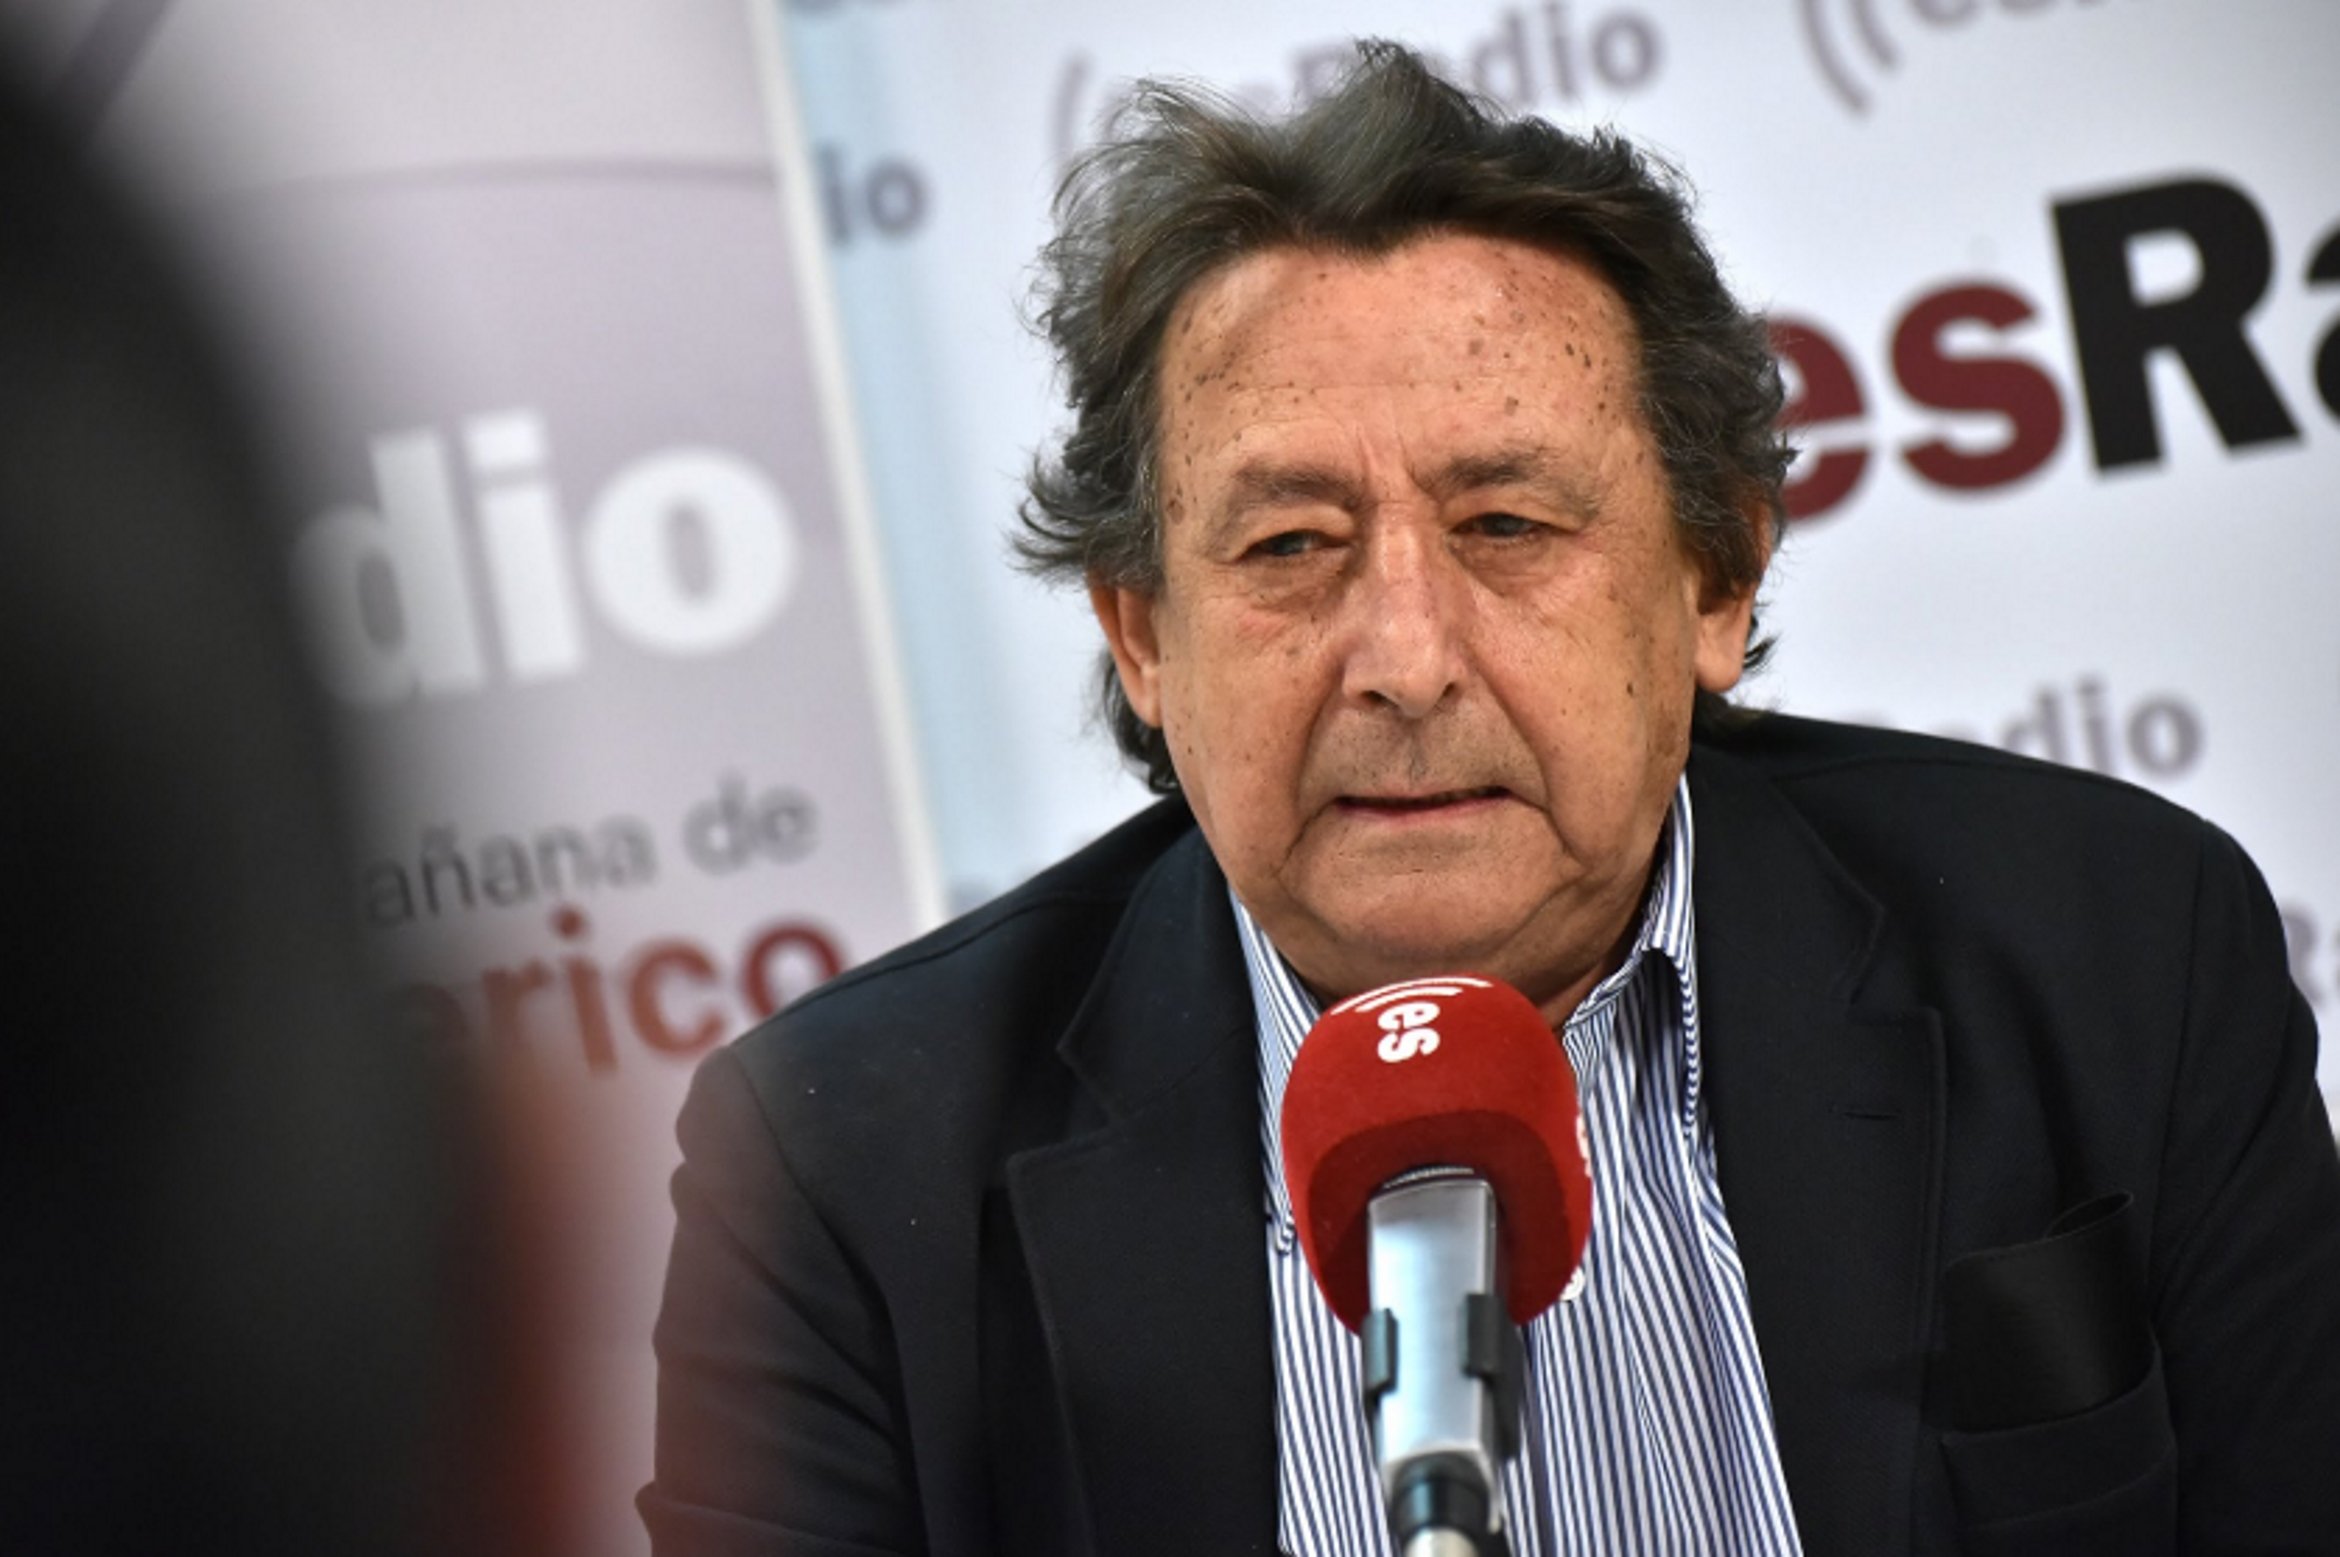 La ira d'Alfonso Ussía (La Razón) contra la "revolta" del PP basc: "Mamarracho"